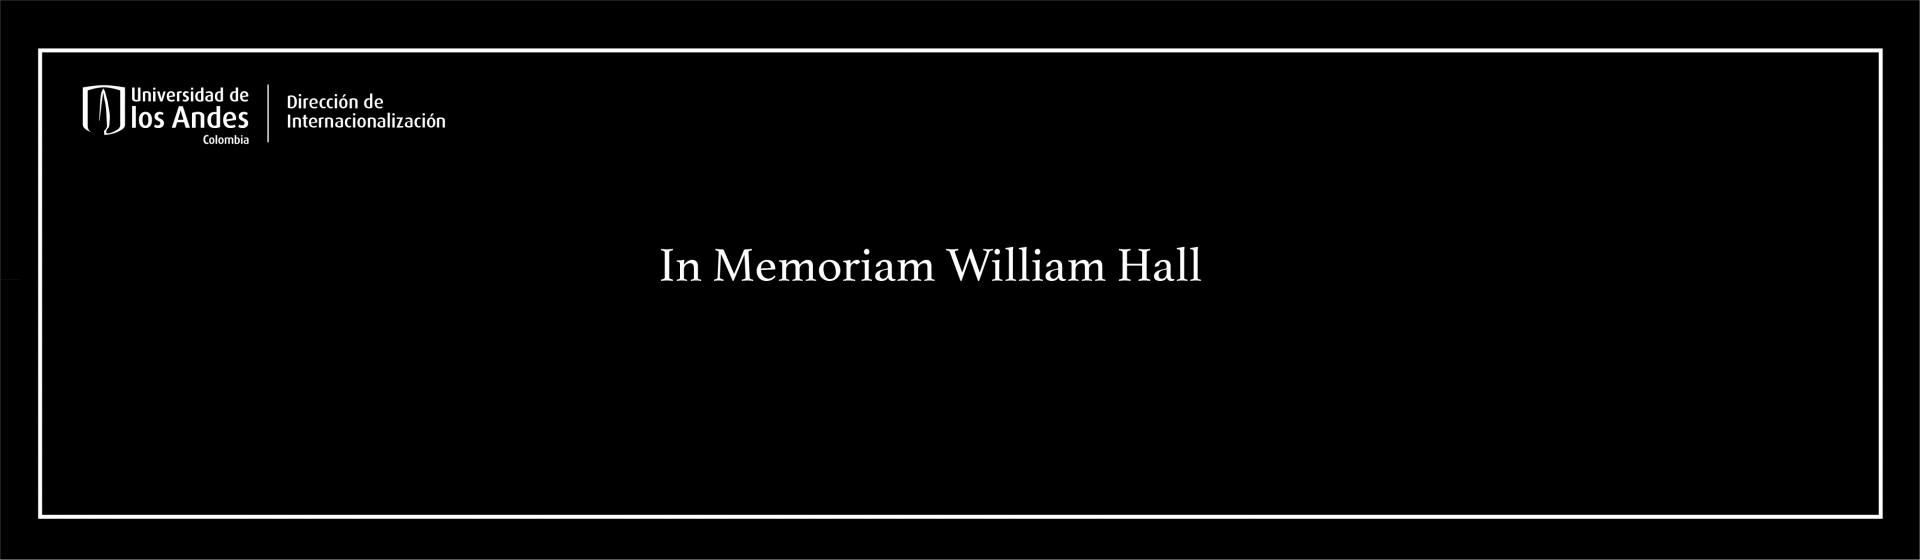 In Memoriam William Hall